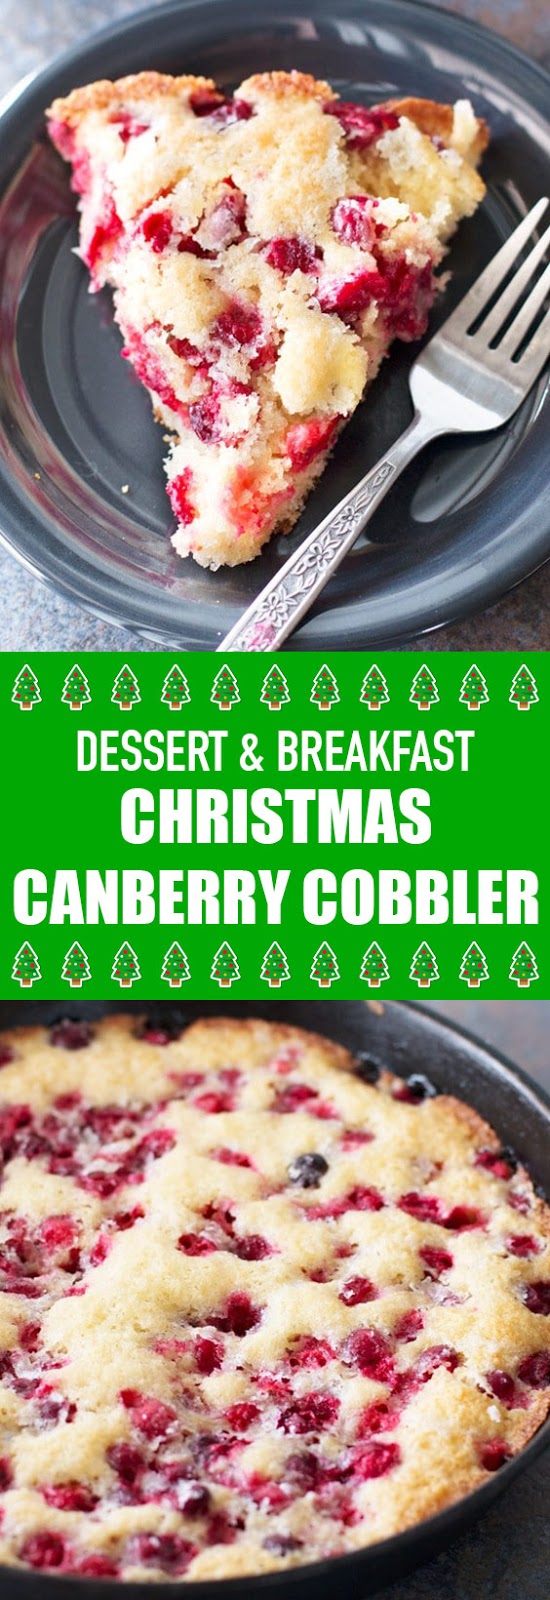 Dessert & Breakfast Christmas Cranberry Cobbler